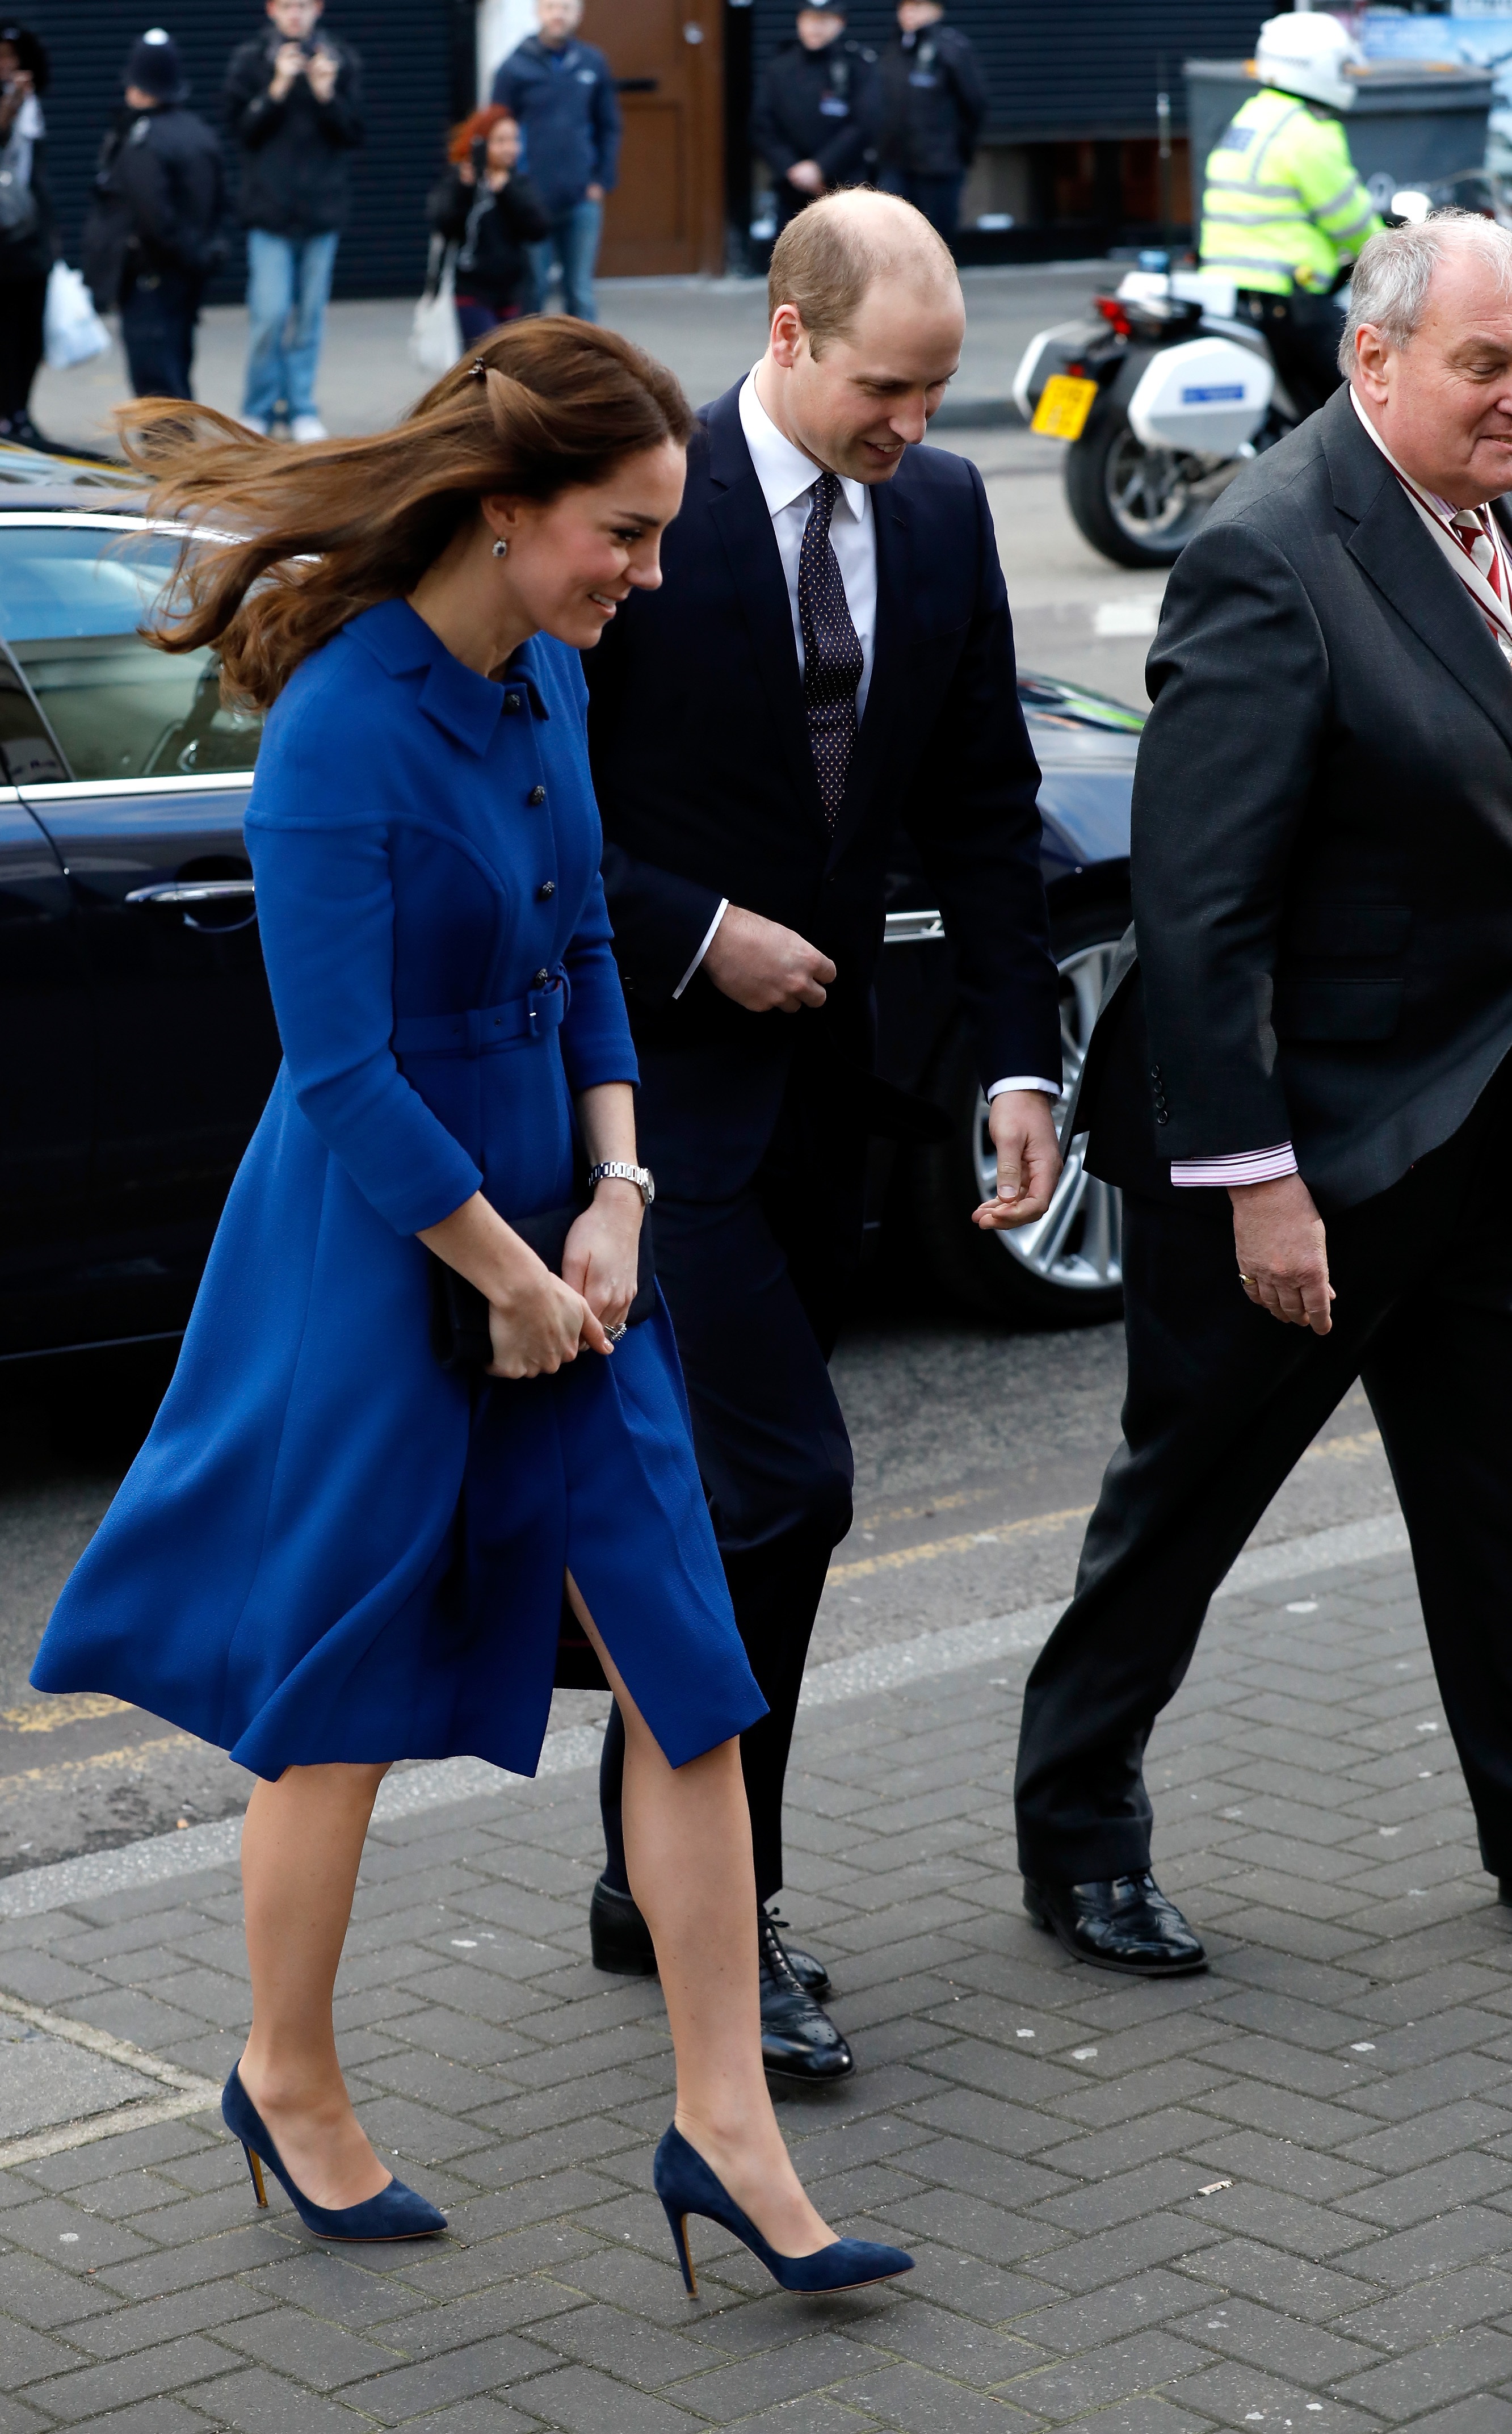 За първото си официално събитие през 2017-а година Кейт Мидълтън се появи в елегантно палто тип рокля в кралско синьо, дело на български дизайнер. Дизайнът е на Петър Петров, който работи за английската марка "Епонин". Фирмата е известна със стилните си дрехи в стилистиката на 50-те и 60-те години. Съпругата на принц Уилям избира за втори път техен тоалет.